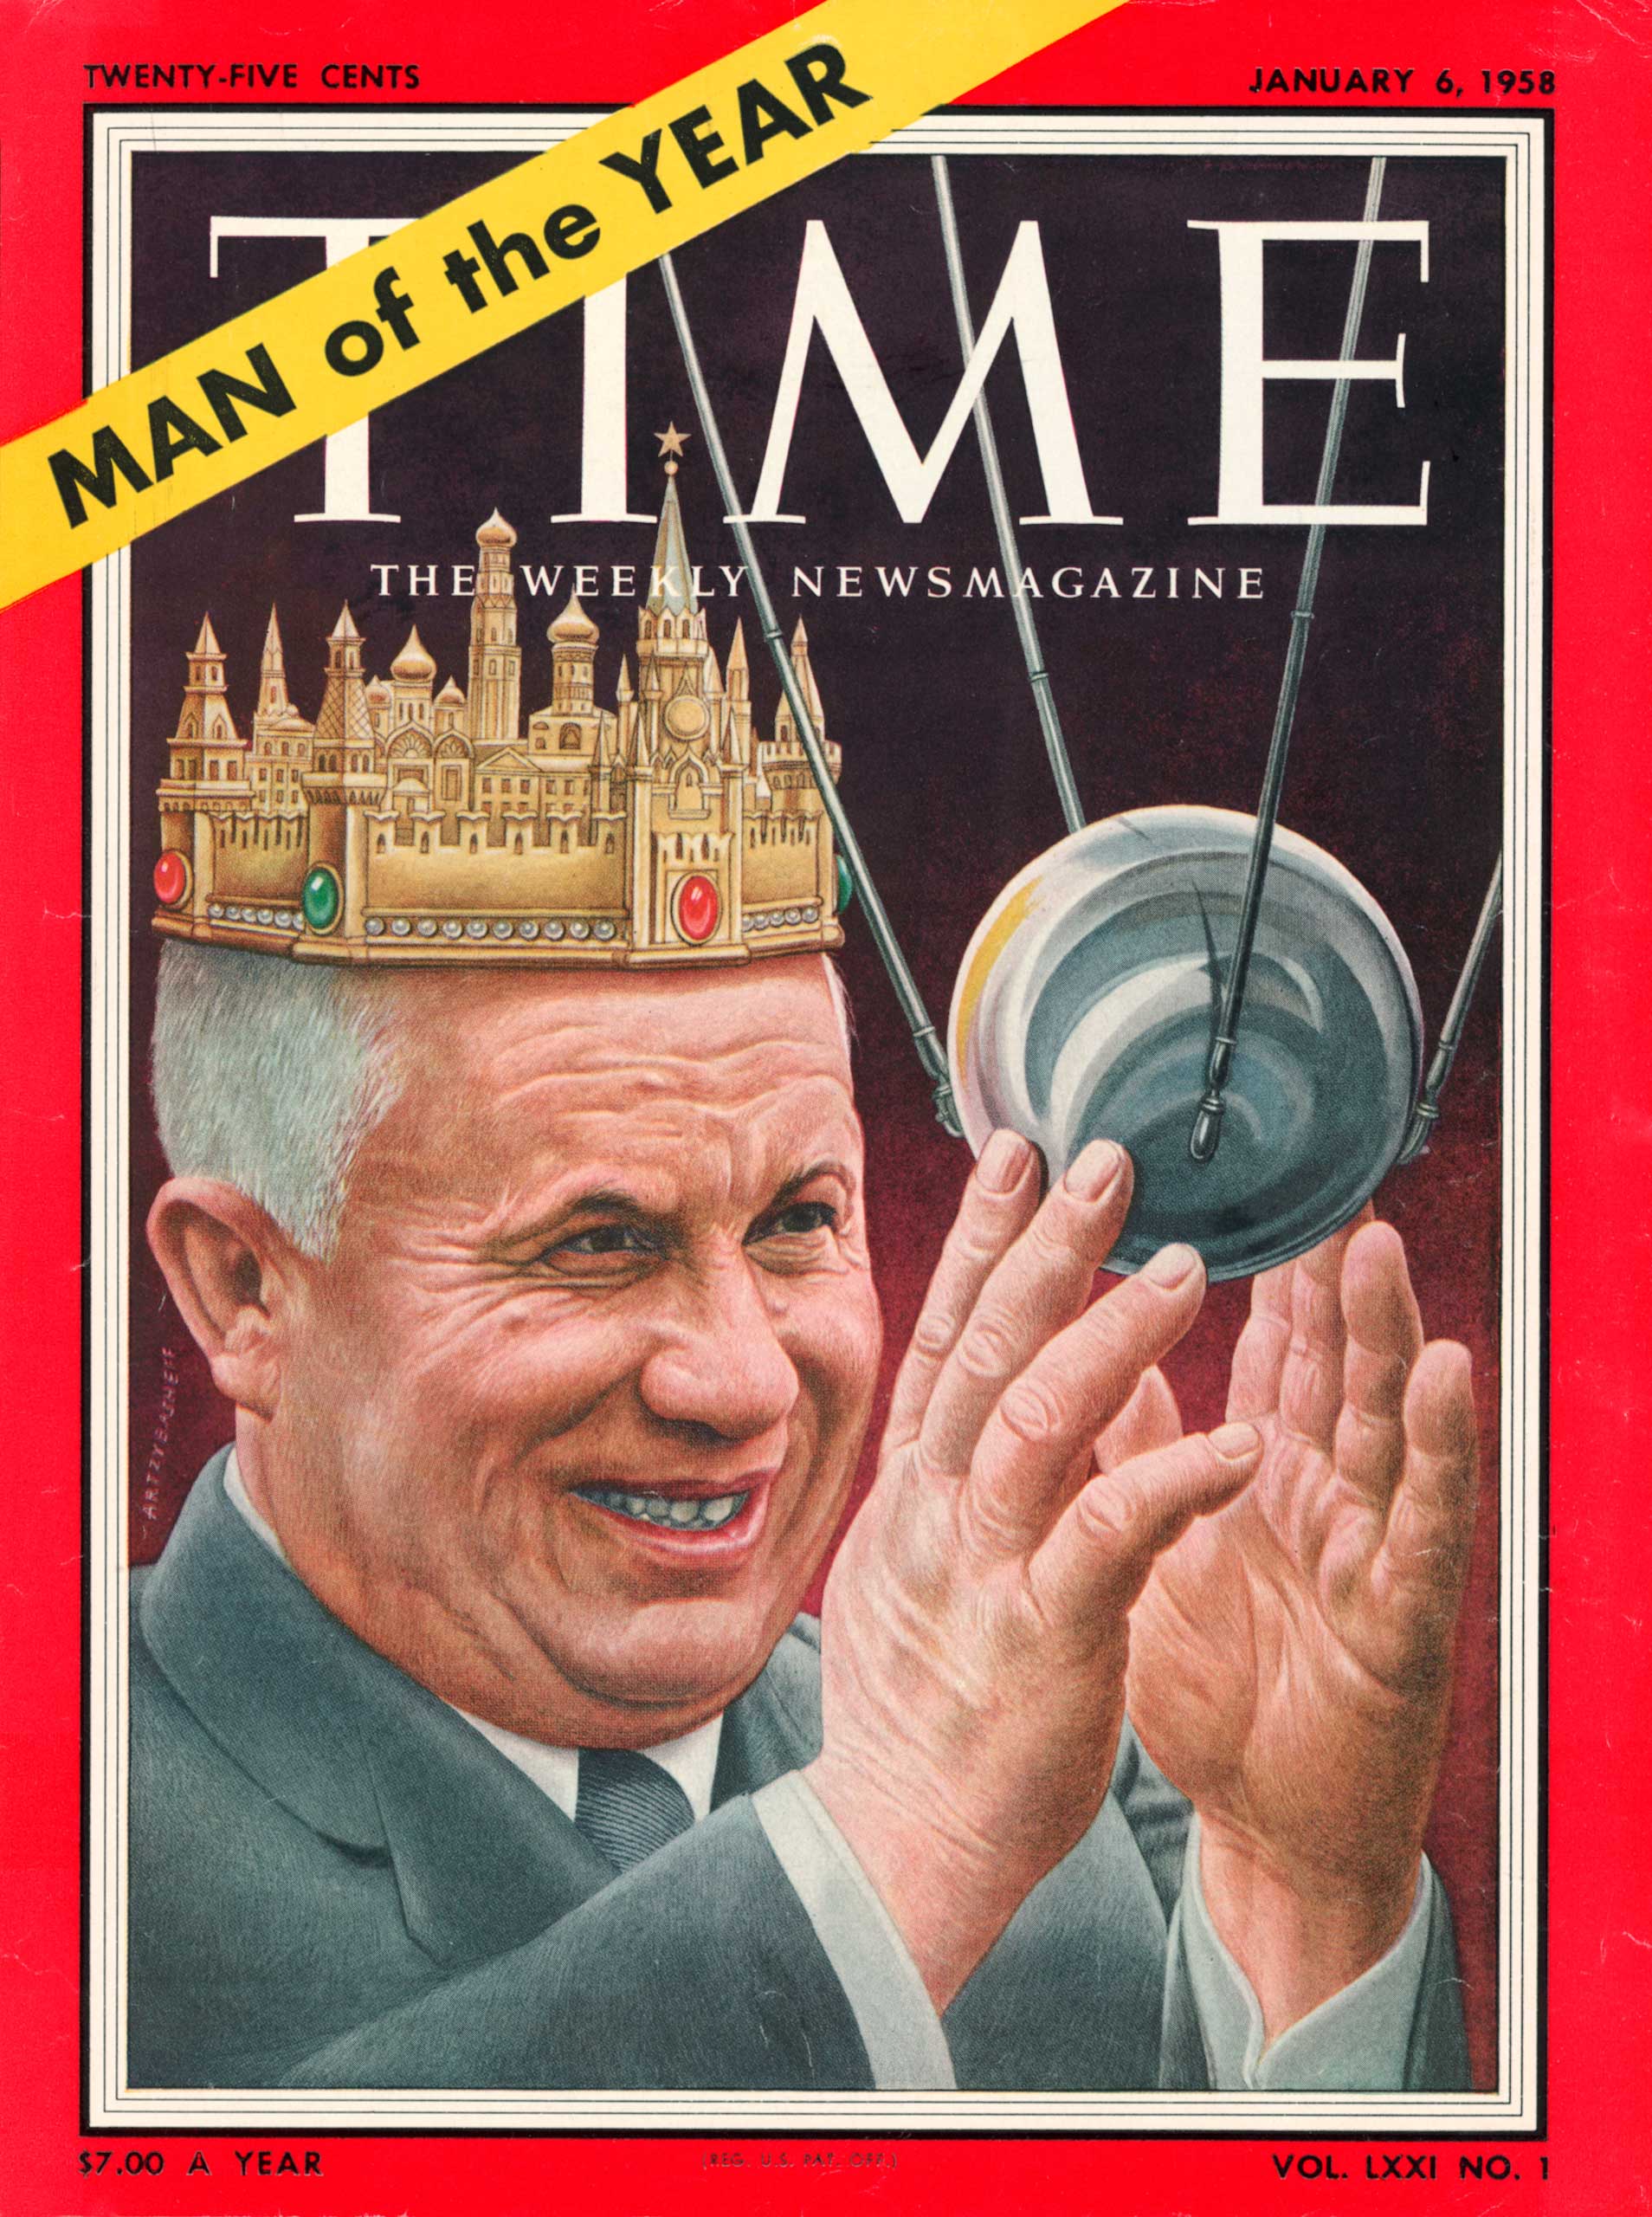 1957: Nikita Khrushchev